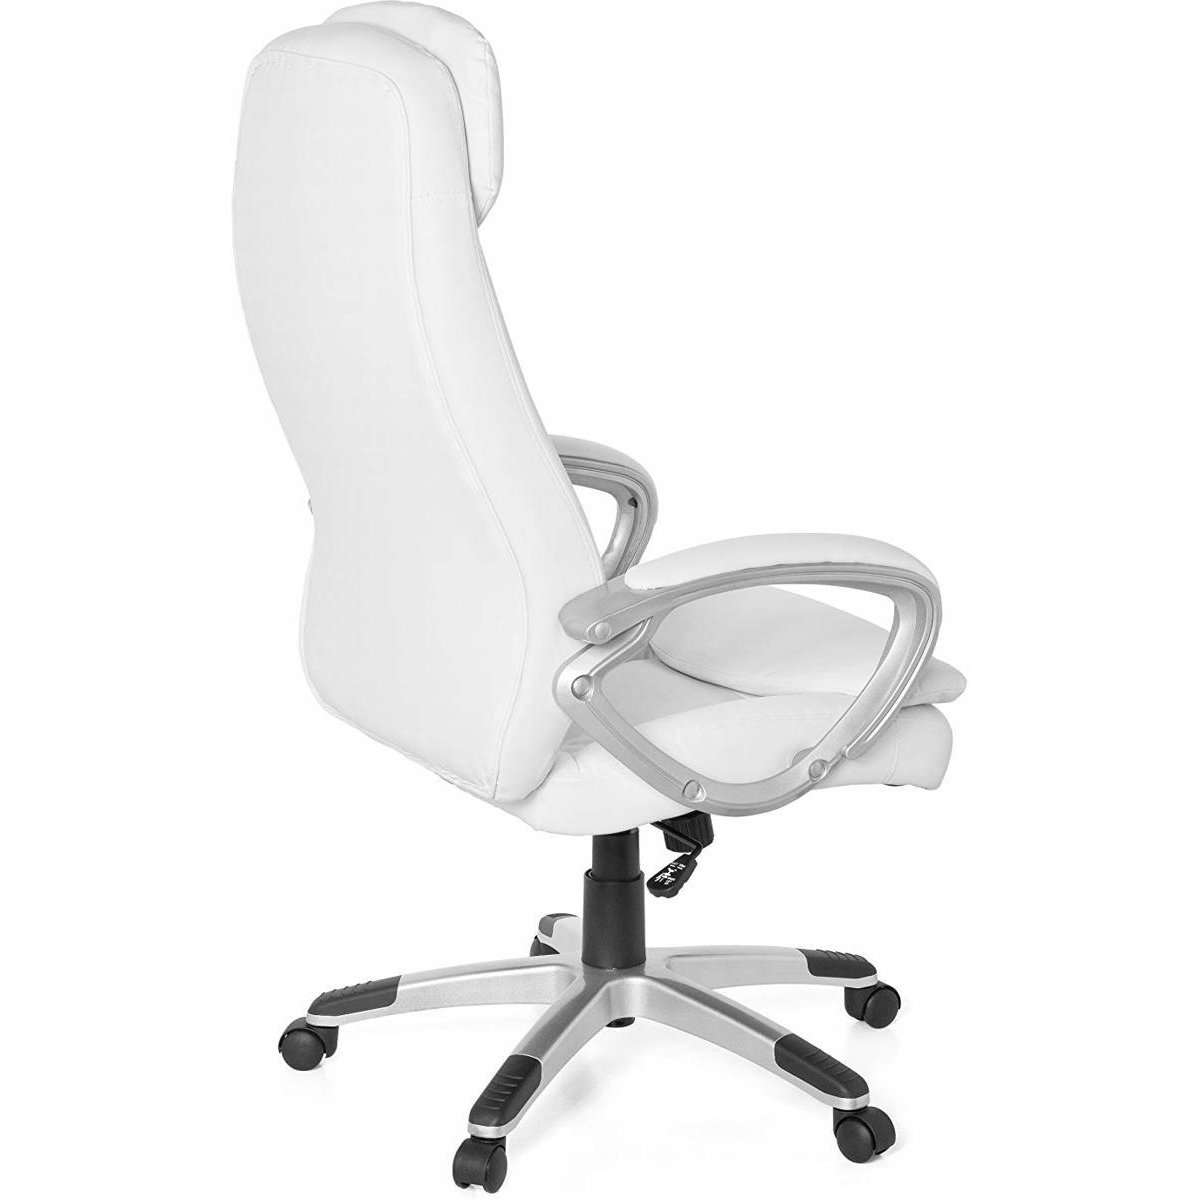 Chaise de bureau Nancy's Van Nest - Chaise de direction - Chaise pivotante ergonomique - Chaises de bureau pour adultes